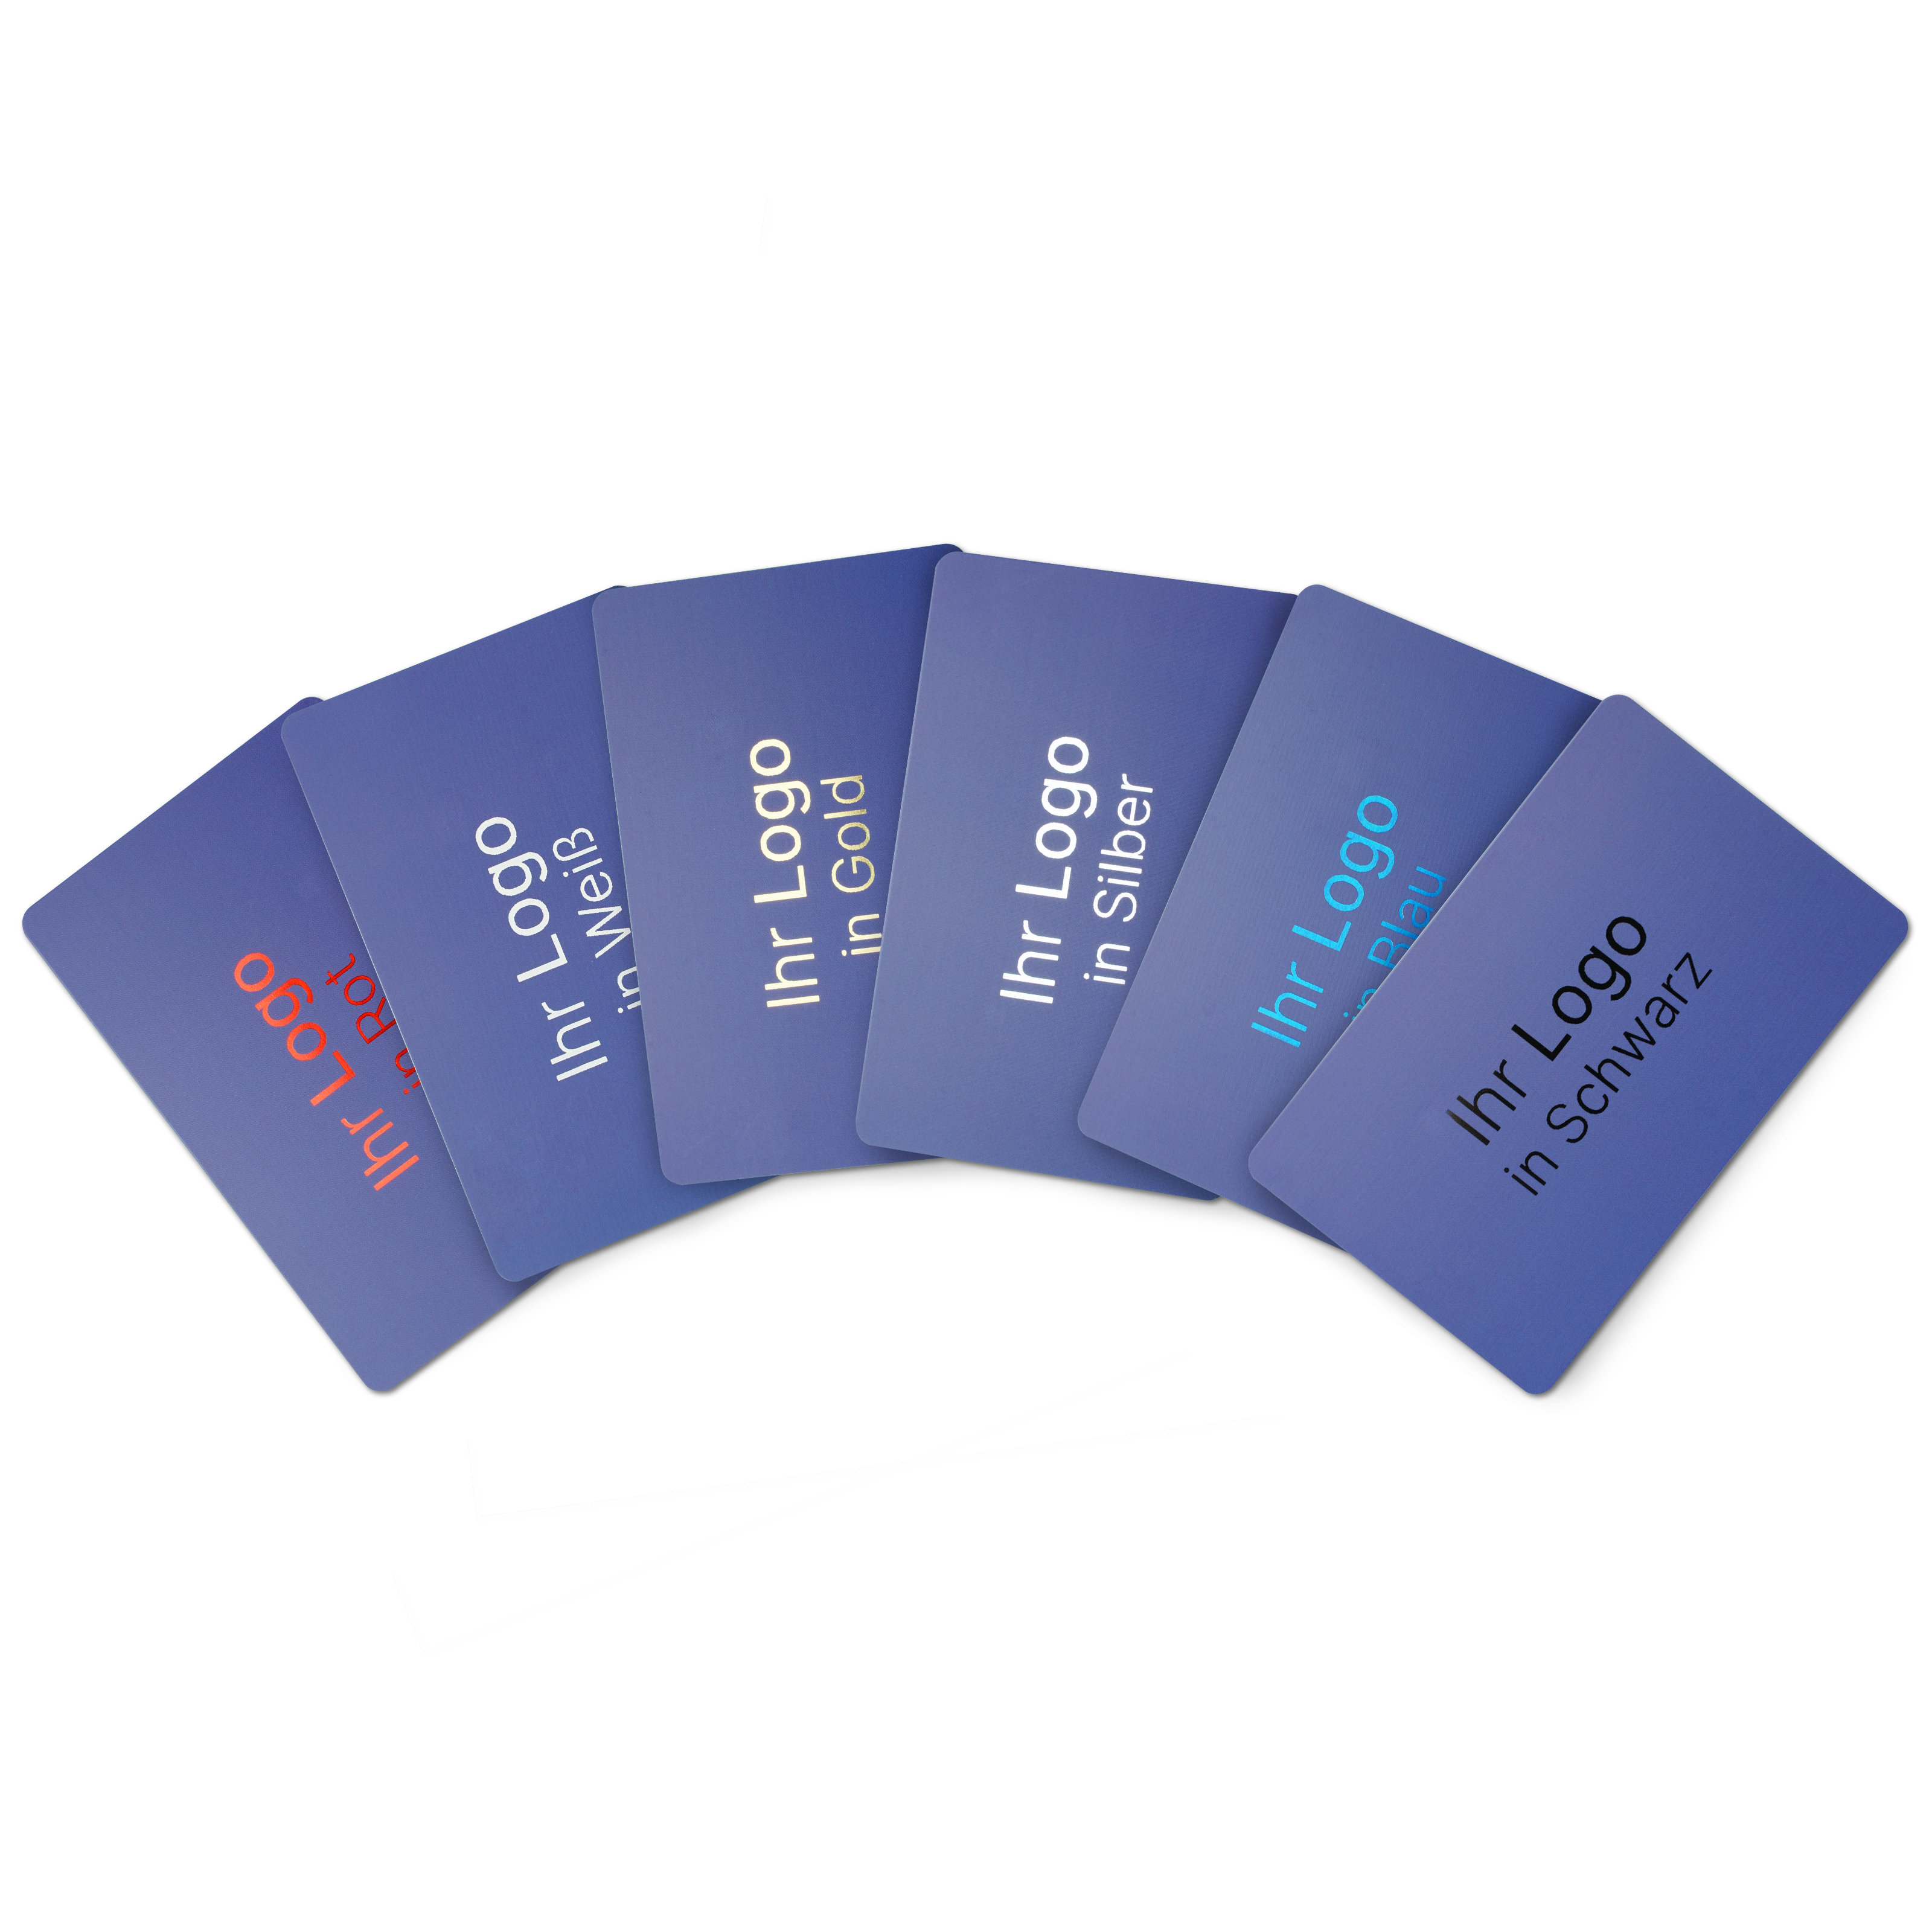 Gruppenbild von blauen NFC Karten mit den verschiedenen Druckfarben